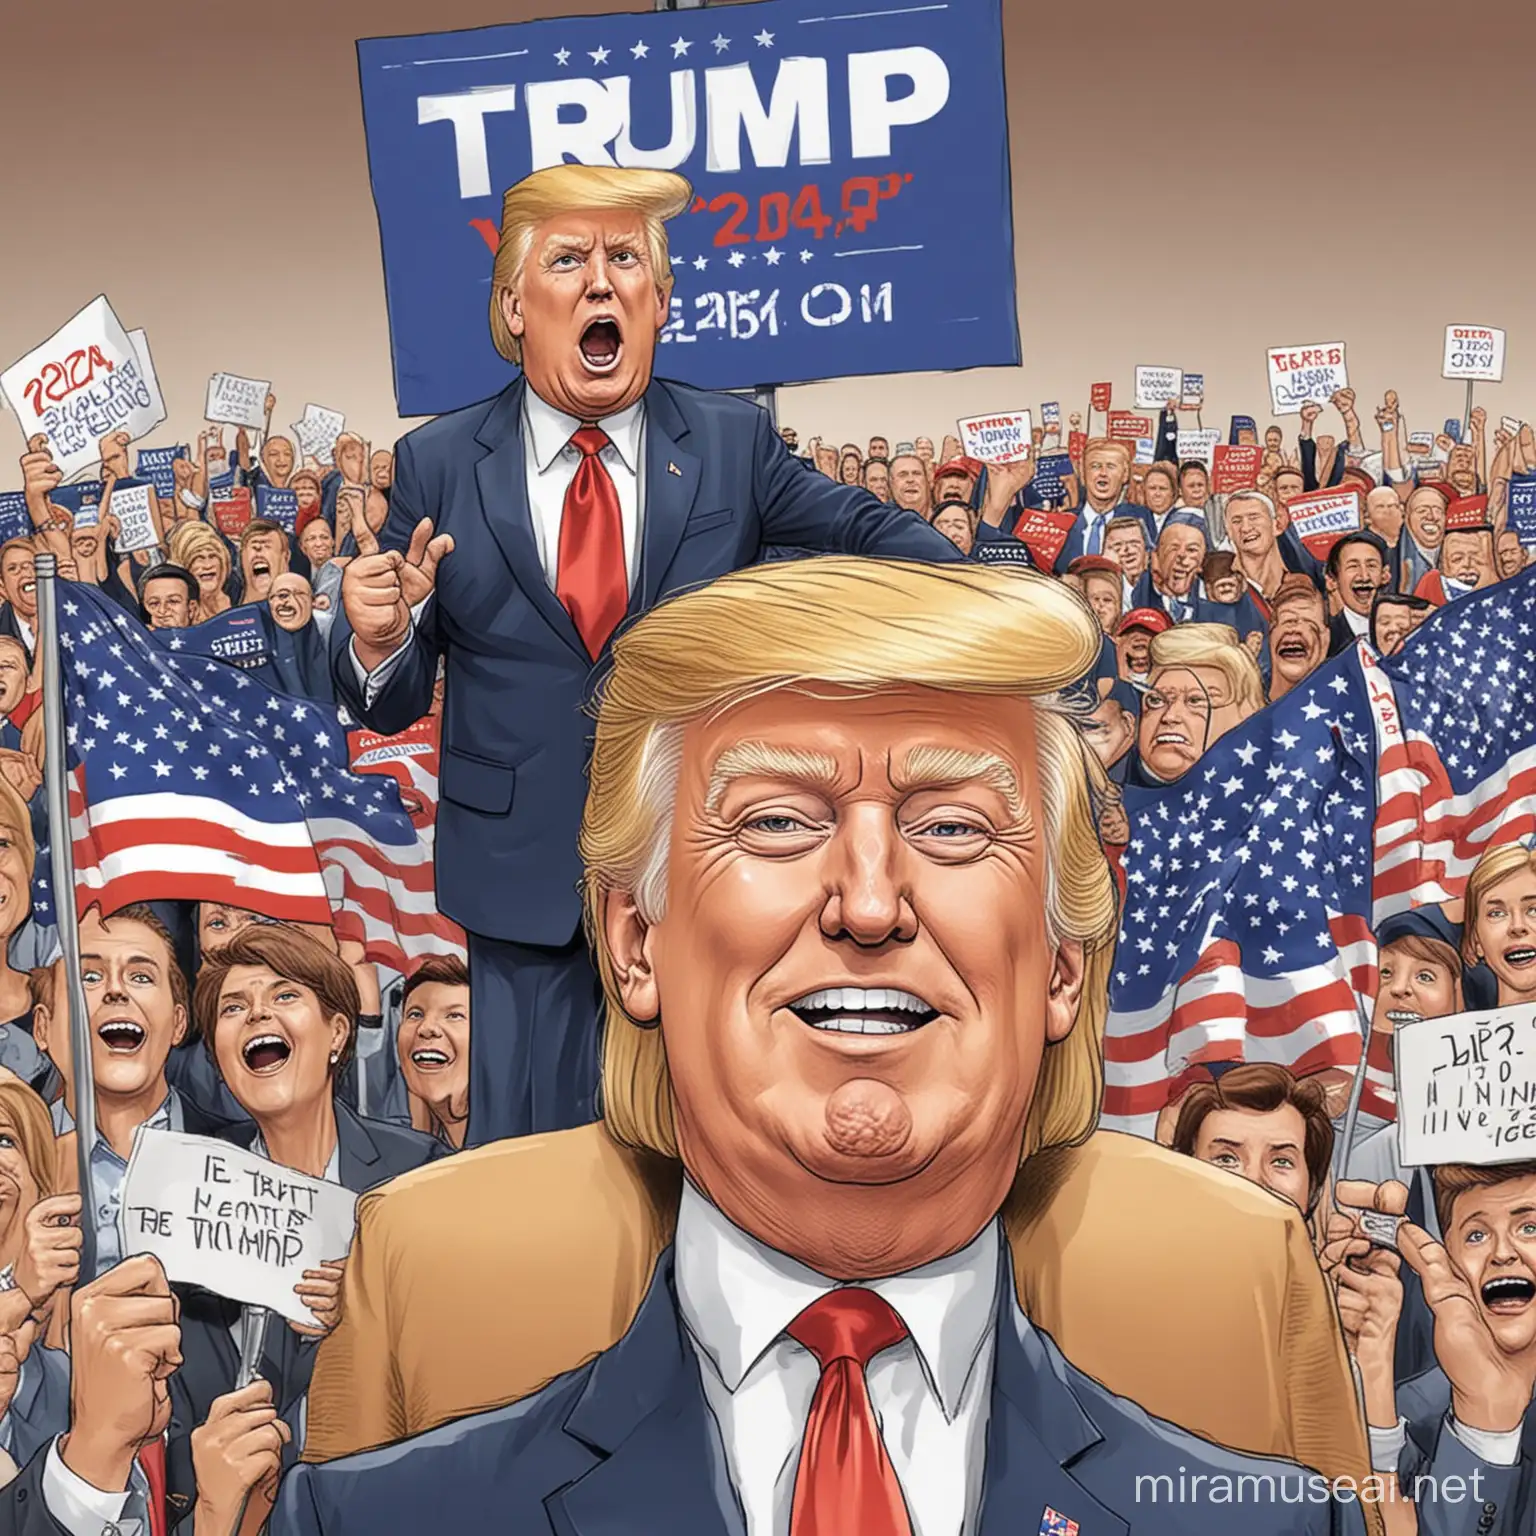 trump winning 2024 election cartoon image